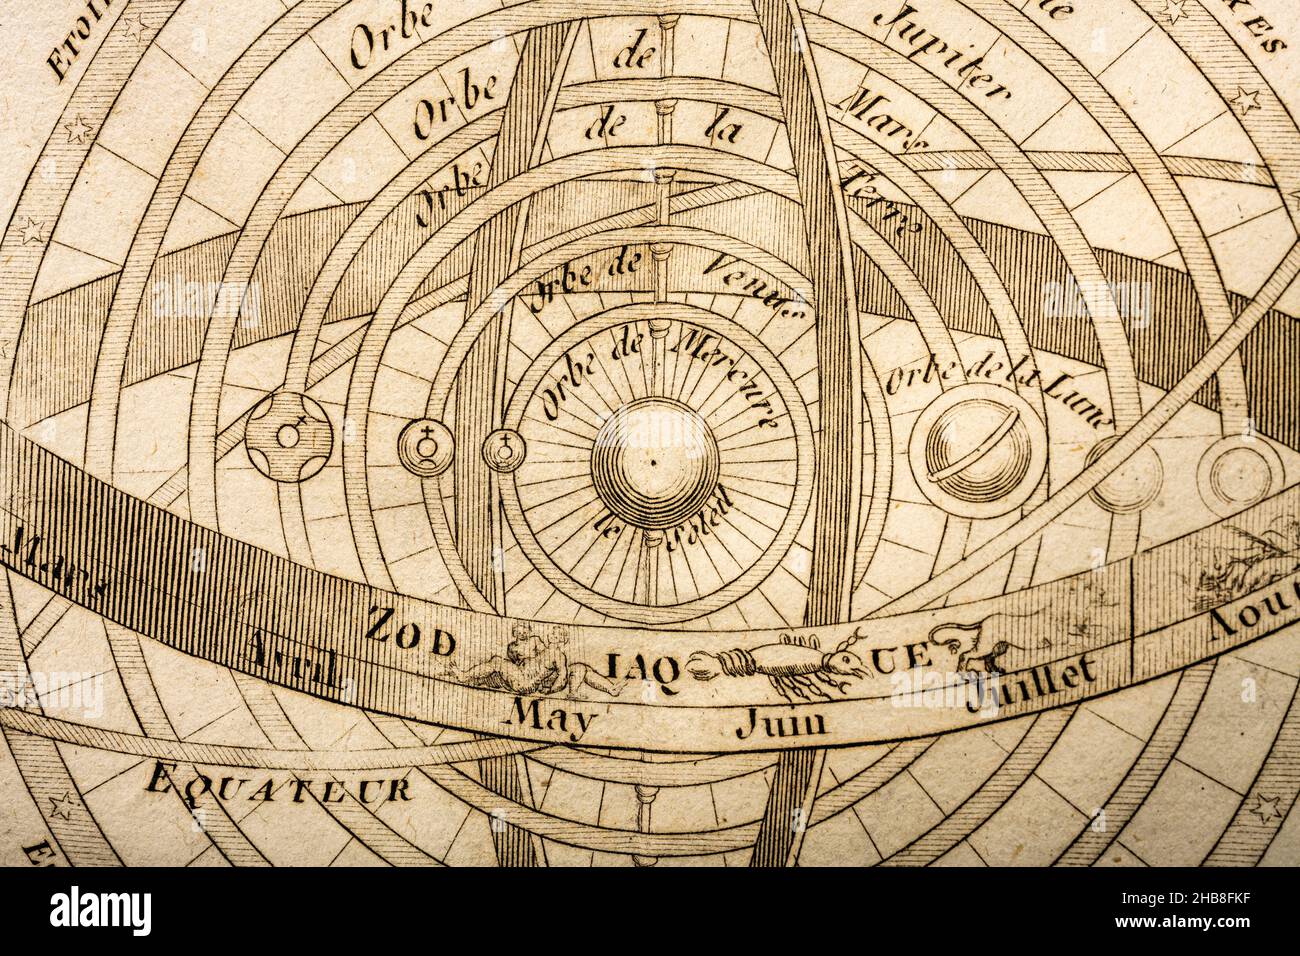 Stampa antica che mostra segni zodiacali e sistema planetario celeste con al centro il Sole Foto Stock